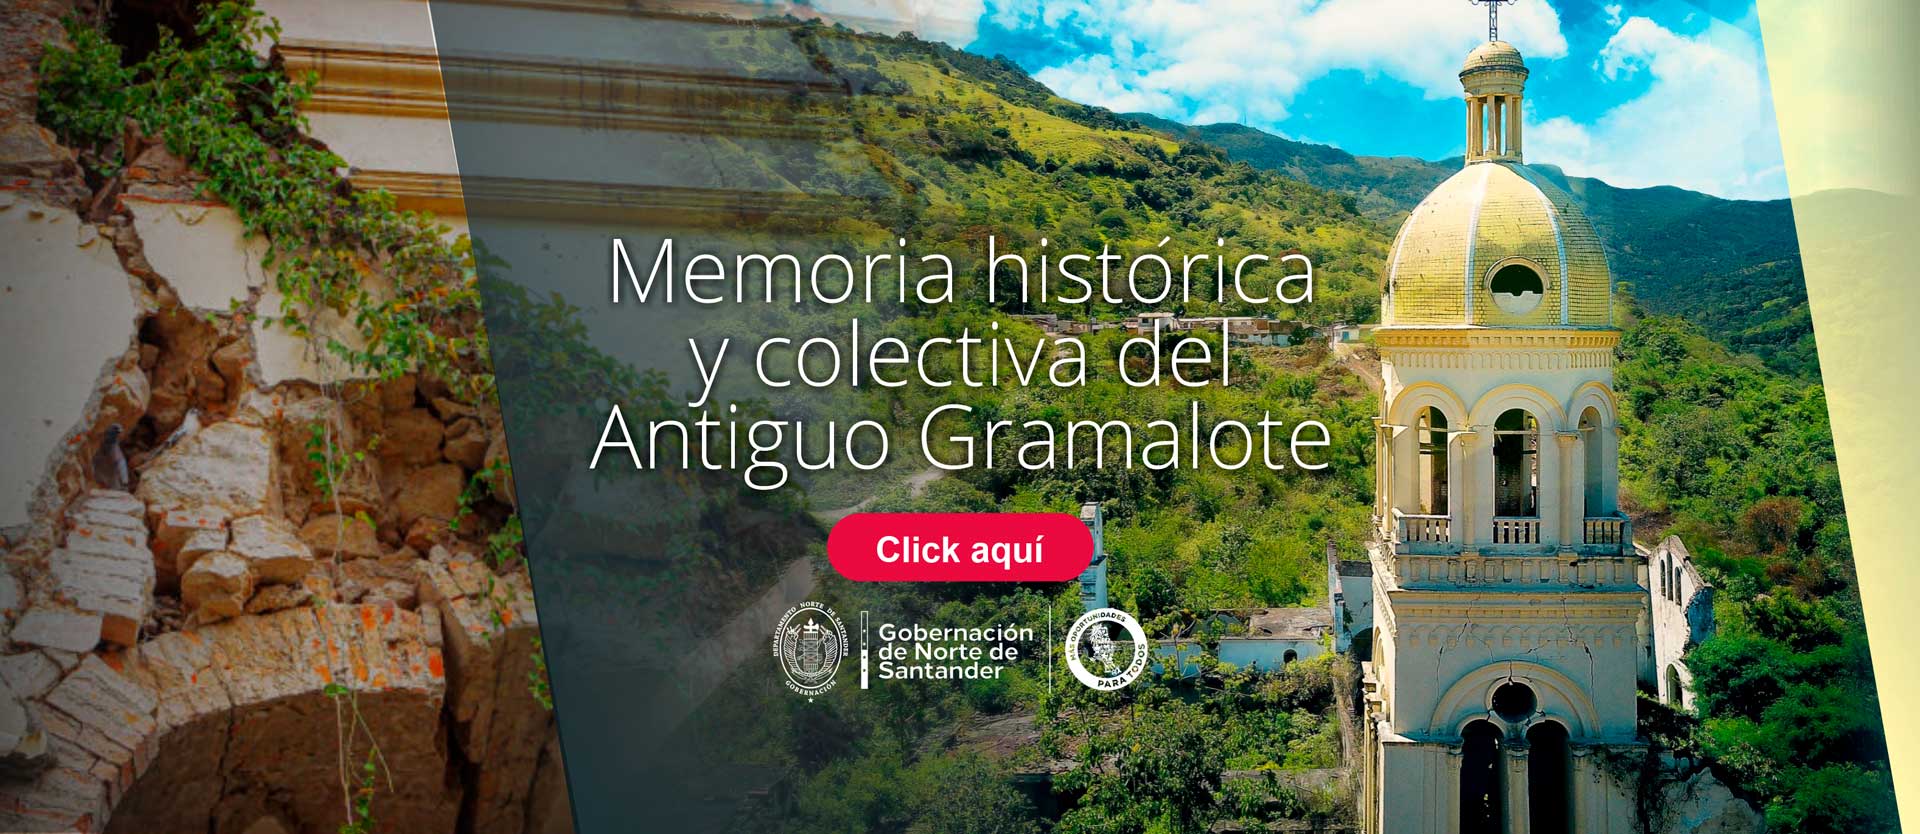 Este enlace abre el documento Memoria histórica y colectiva del Antiguo Gramalote